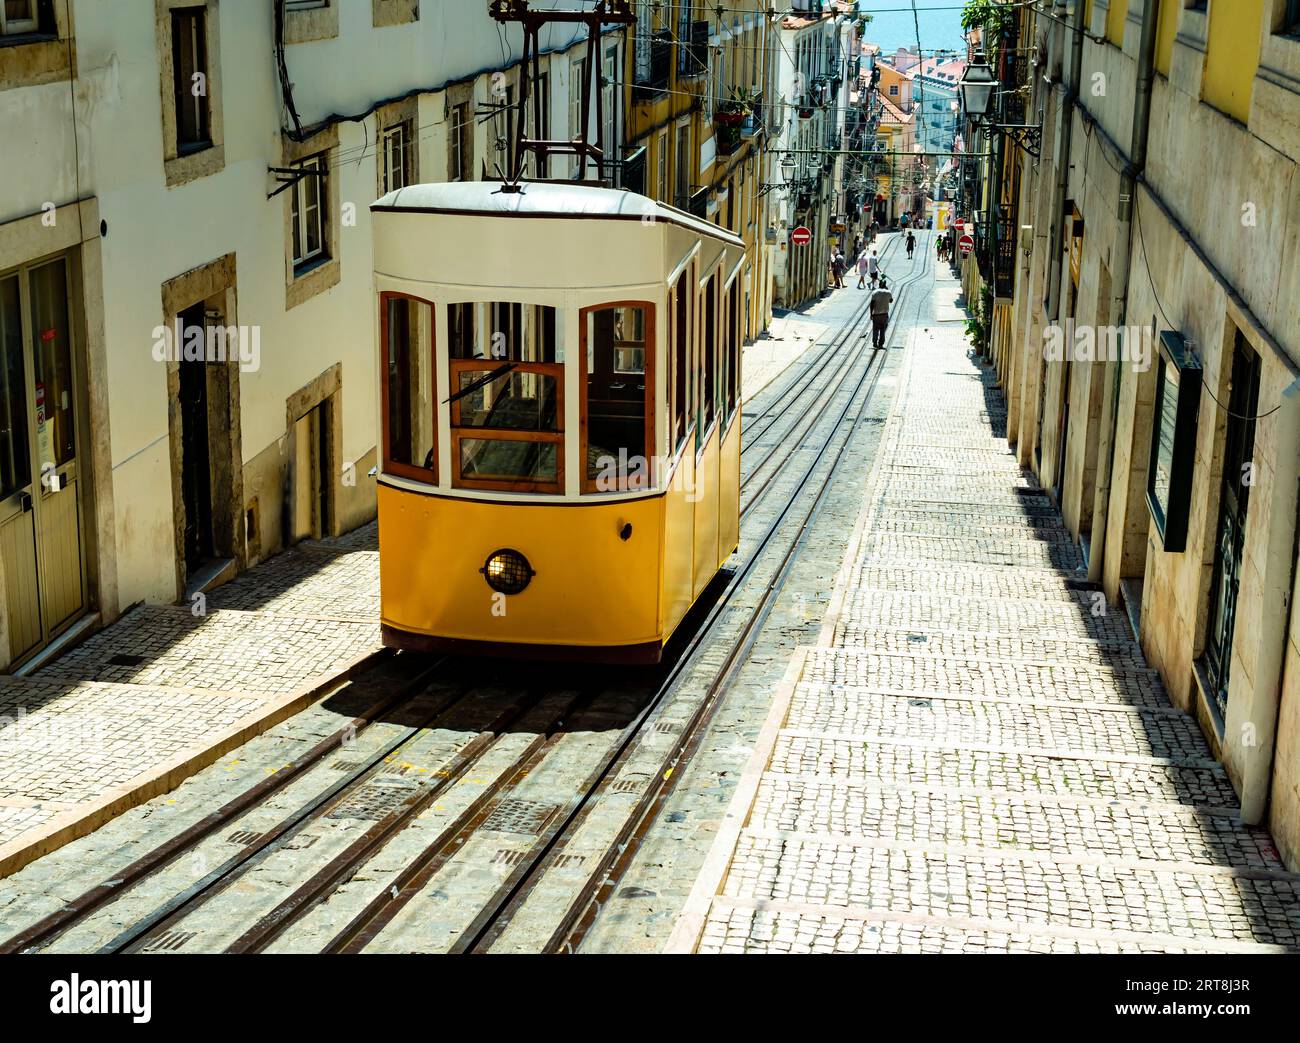 Atemberaubender Blick auf den berühmten Elevador da Bica, eine Retro-gelbe Straßenbahn, die im historischen Zentrum von Lissabon, Portugal, verkehrt Stockfoto